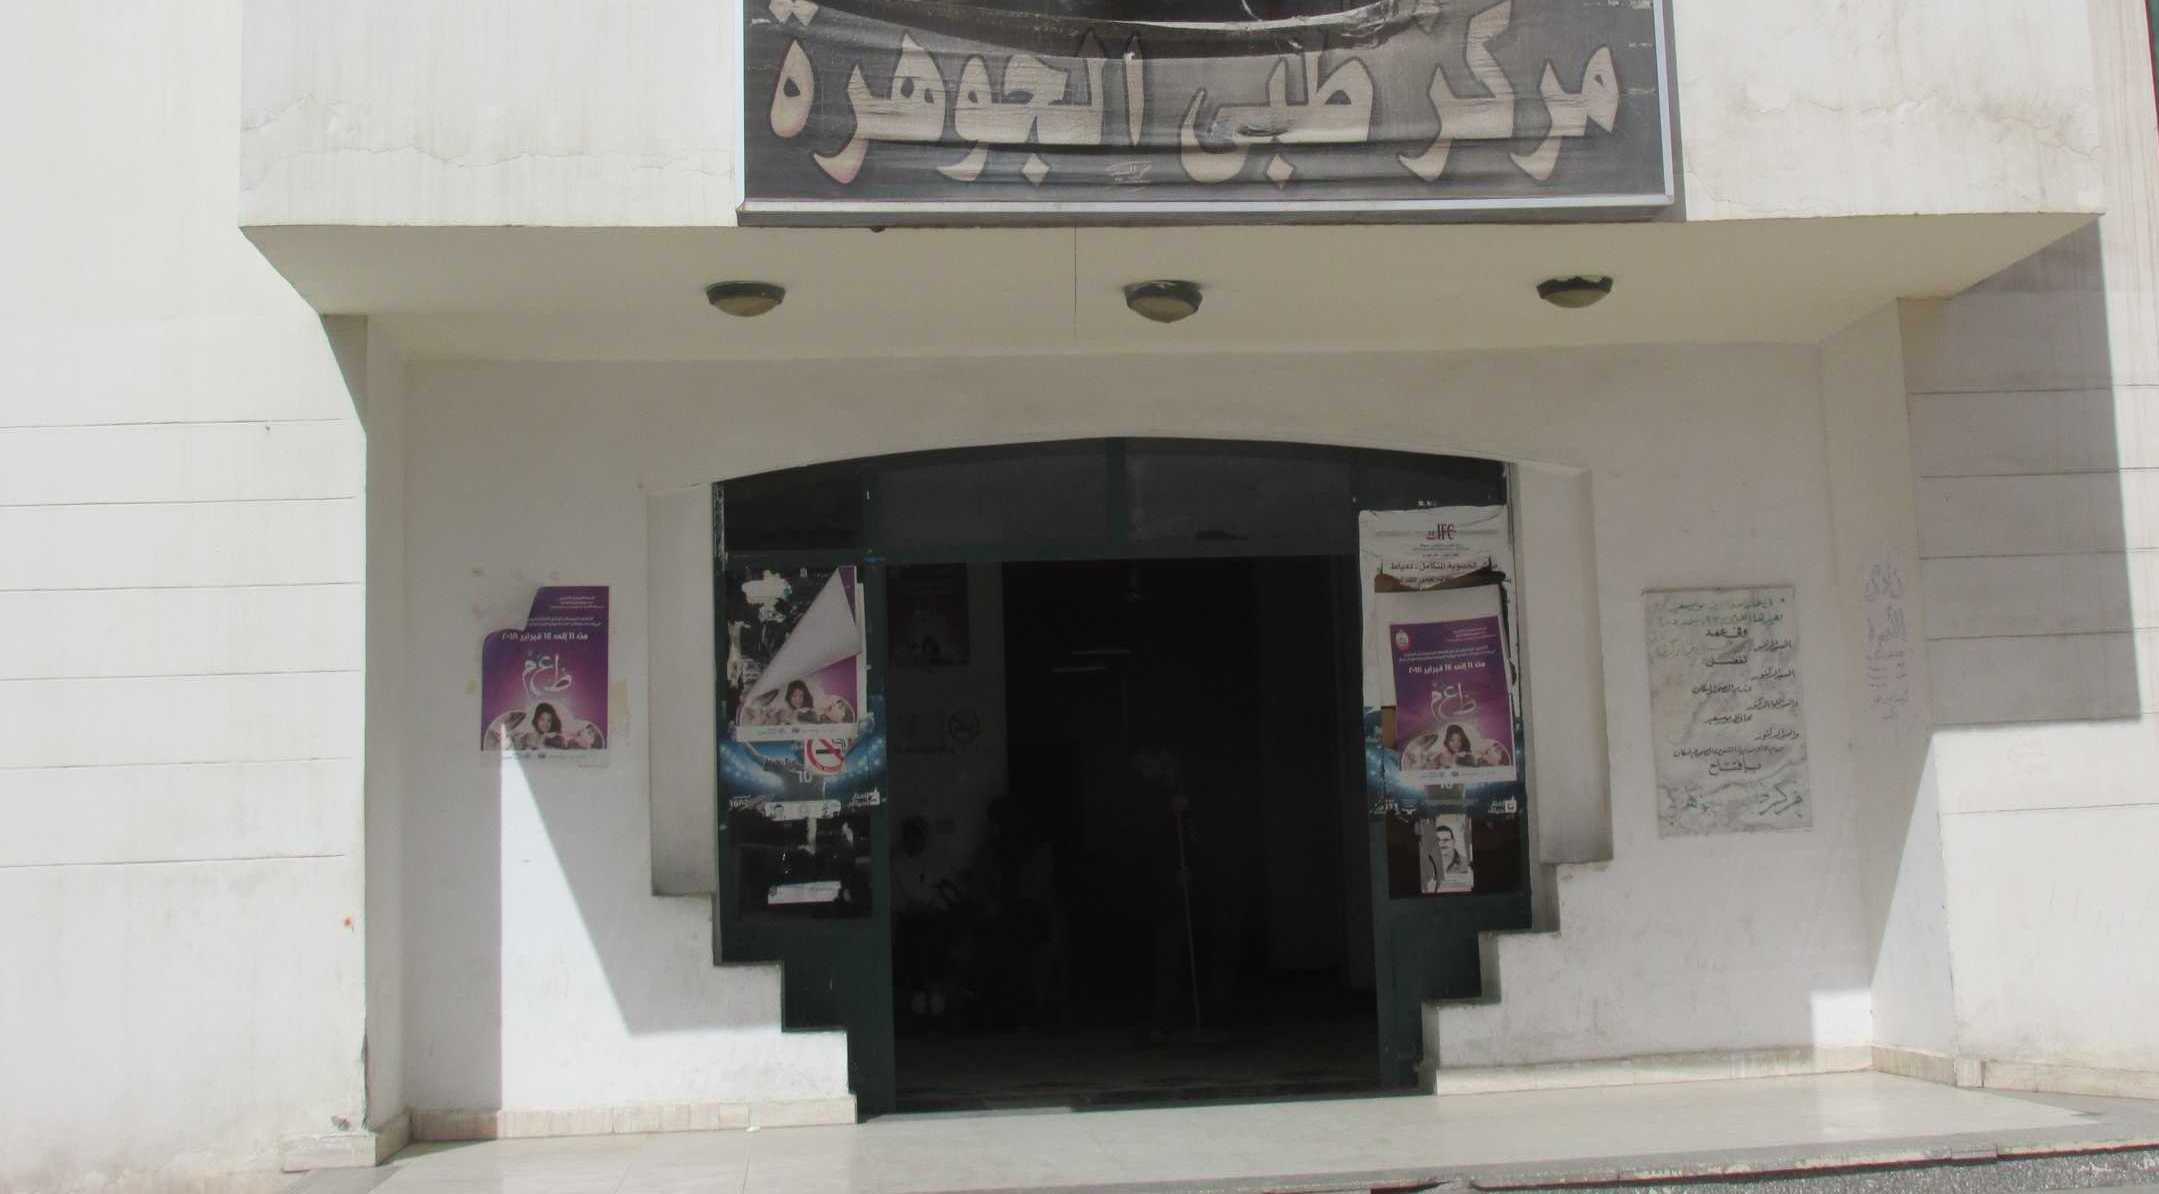  جانب من مركز طبى الجوهرة ببورسعيد